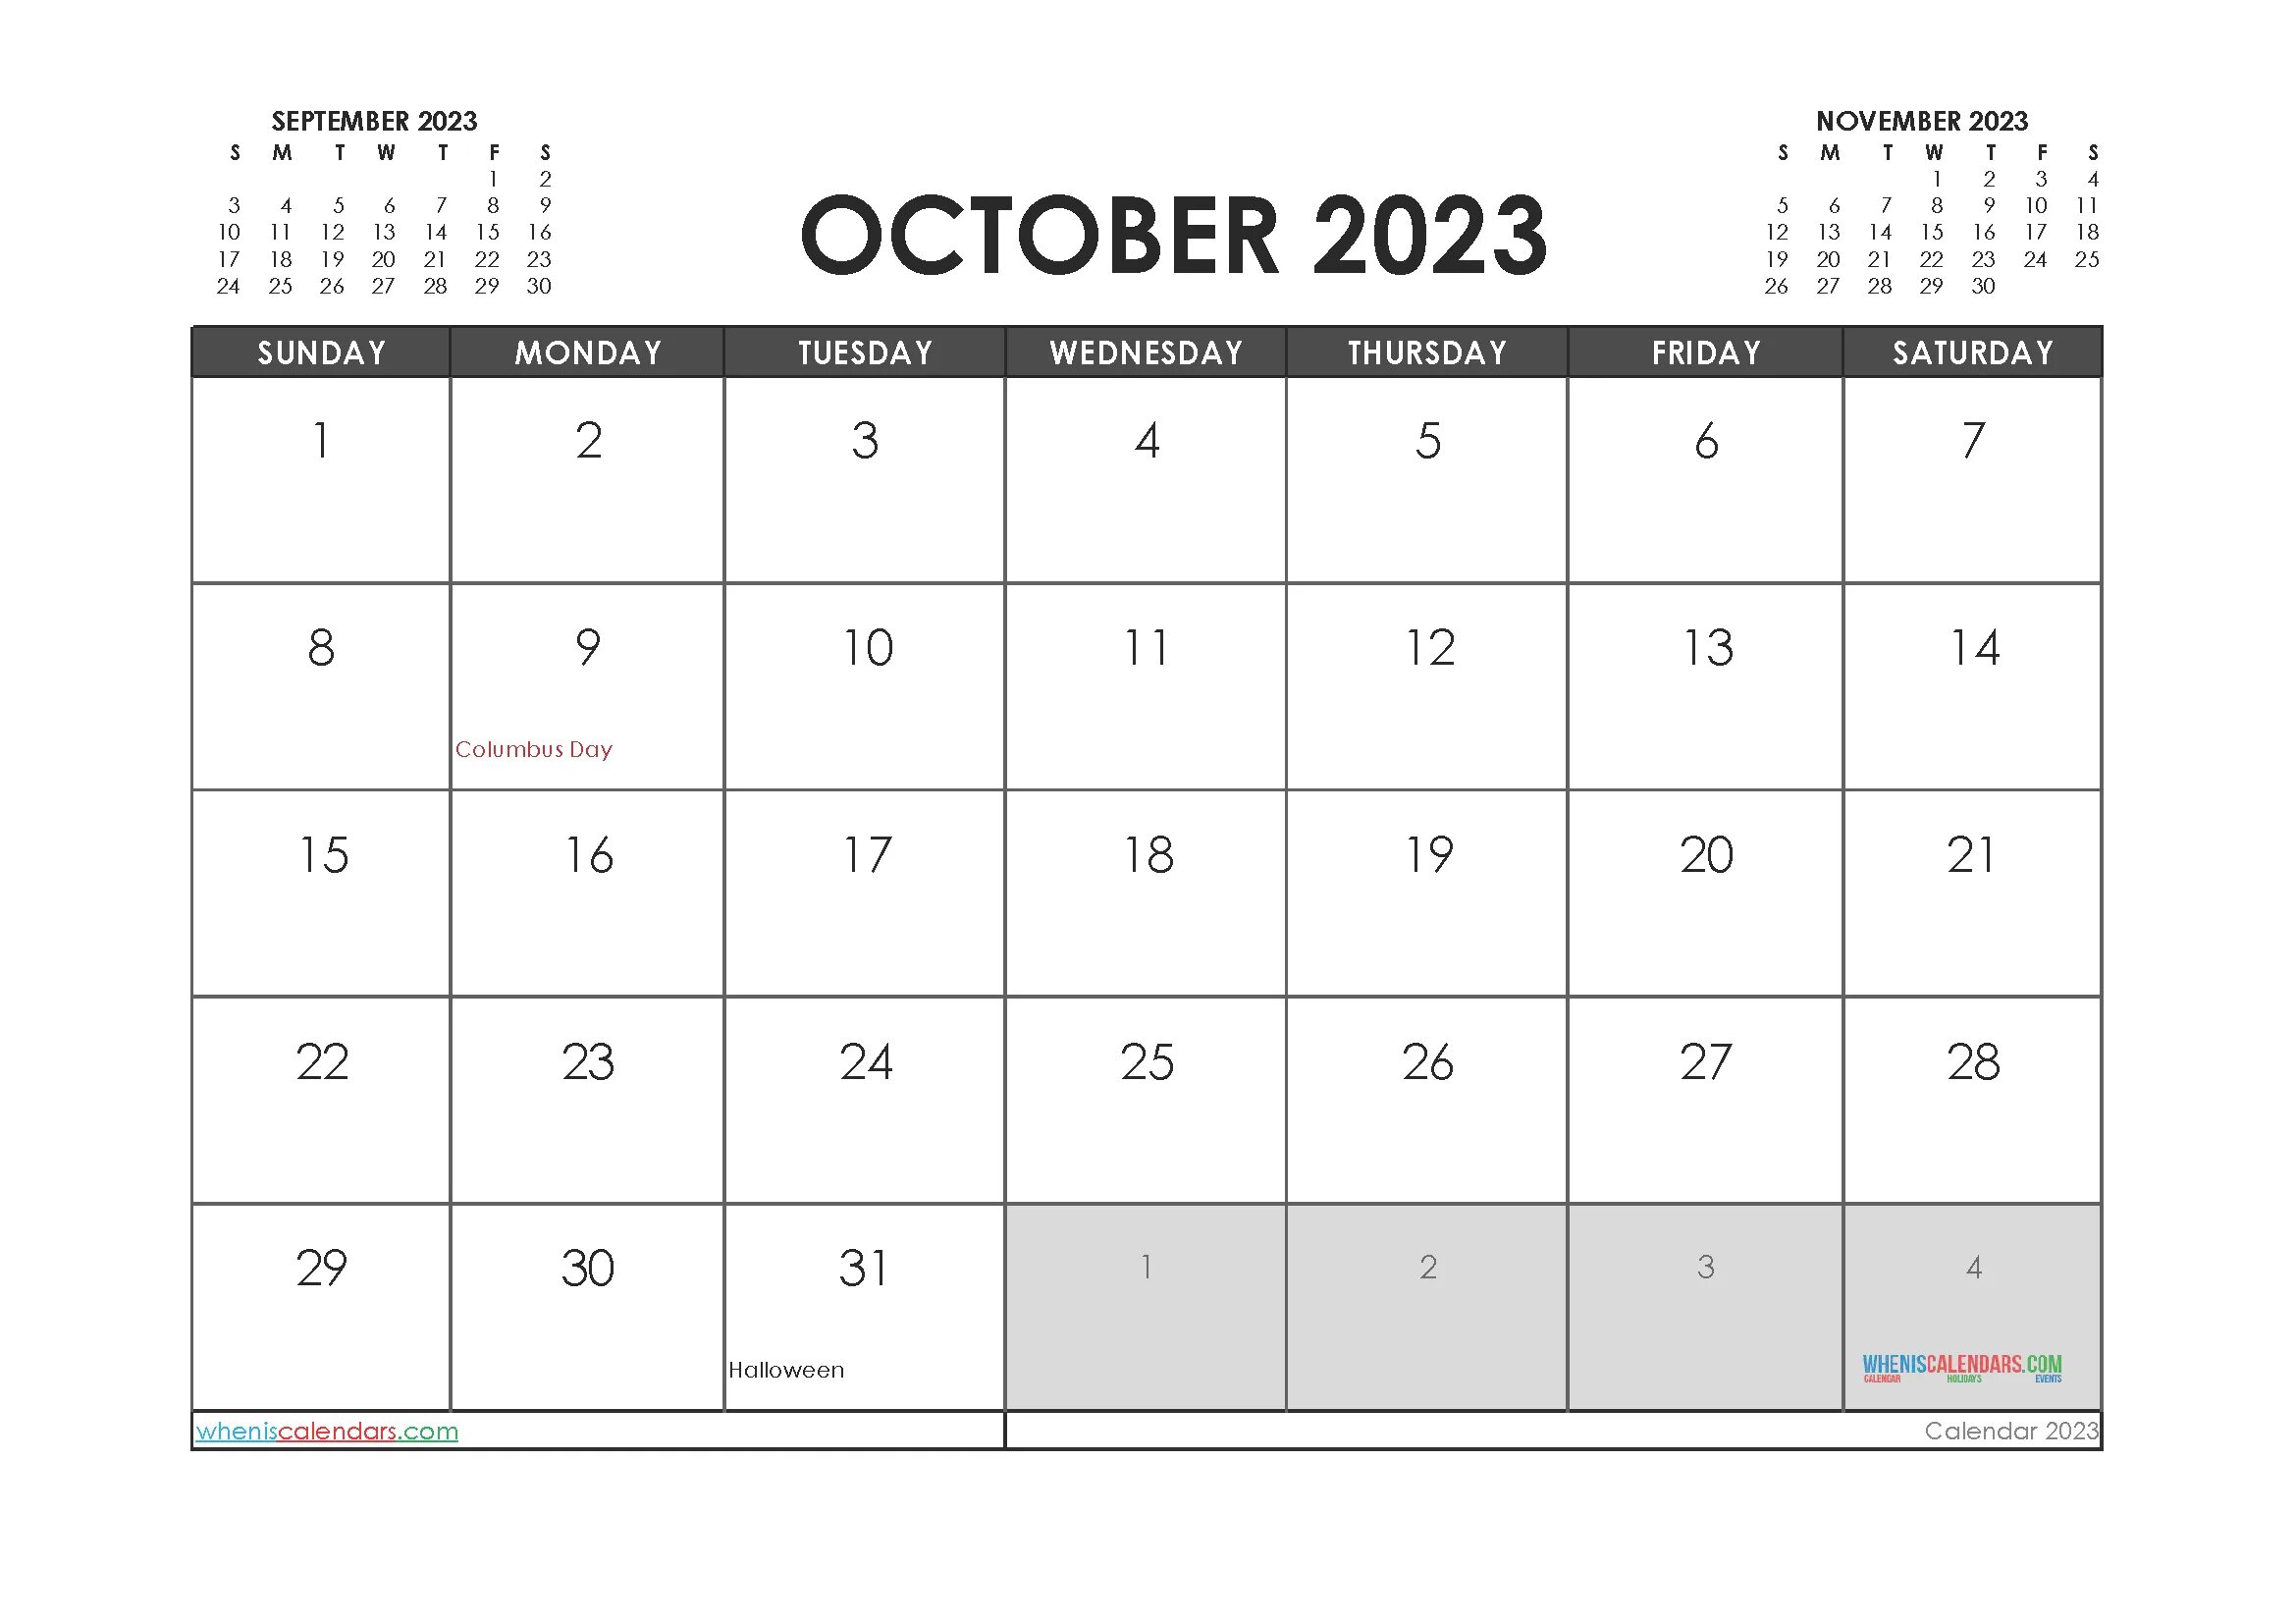 Календарь 2023. Октябрь 2023. Календарь на октябрь 2023 года. Октобер 2023.